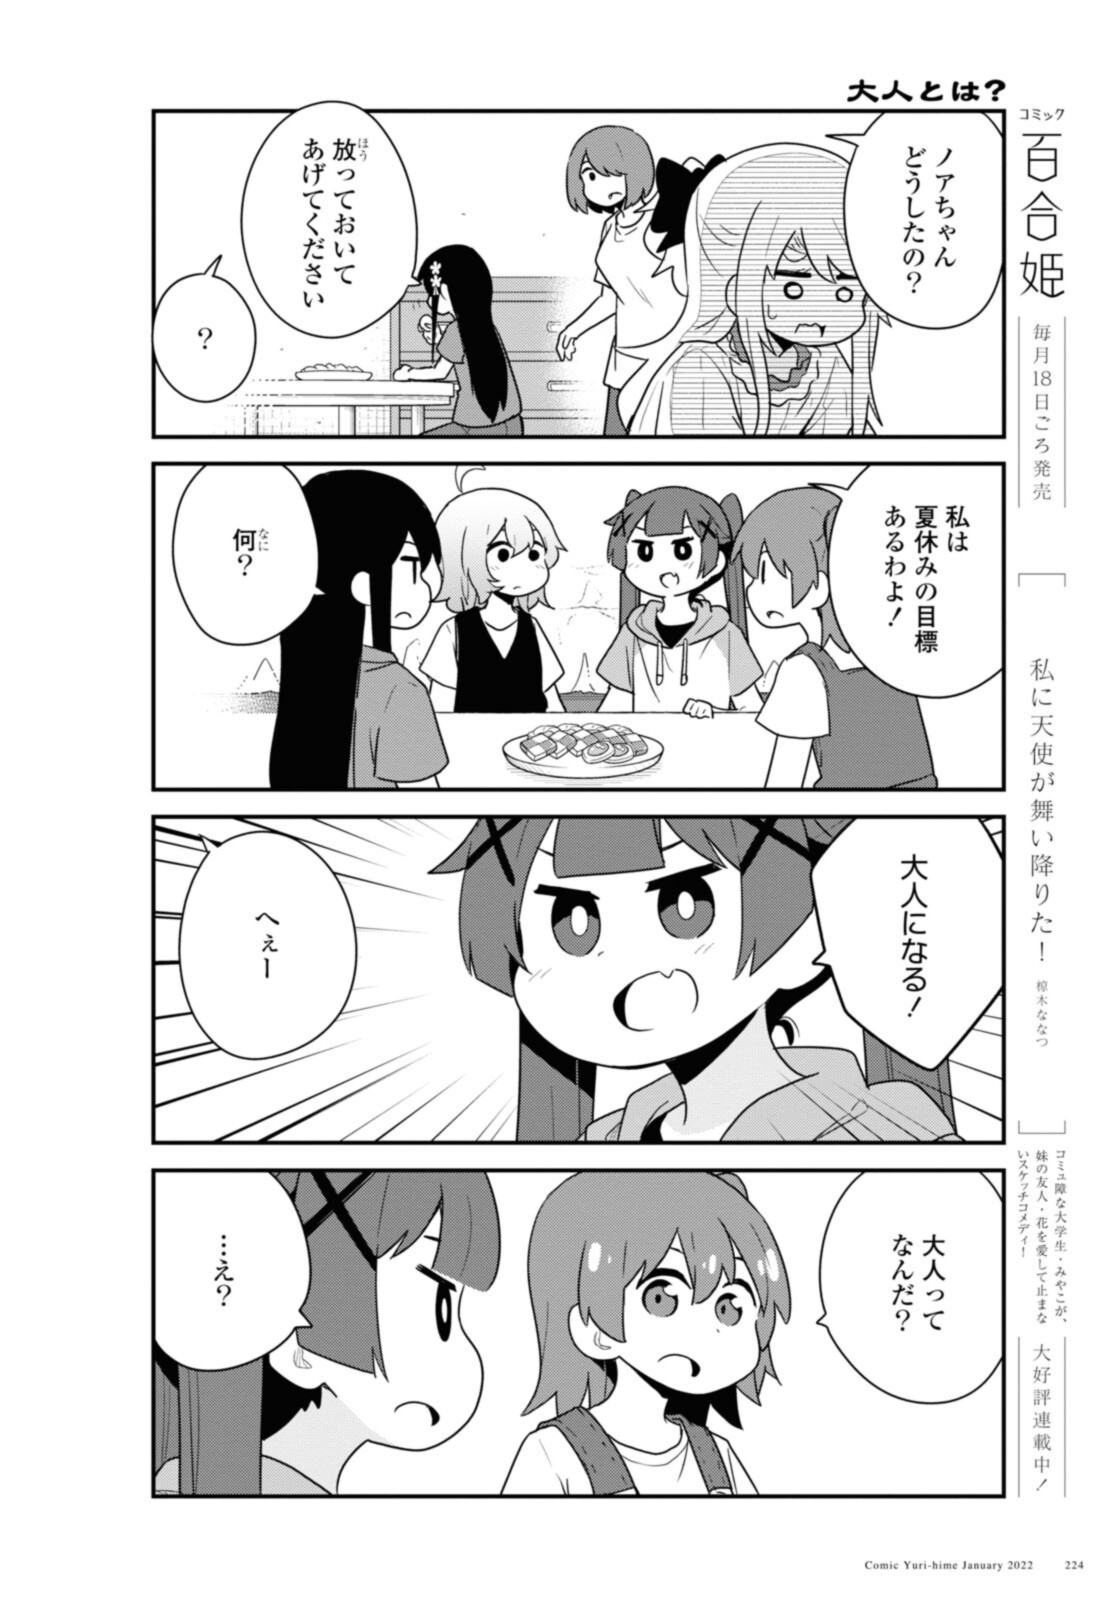 Watashi ni Tenshi ga Maiorita! - Chapter 91 - Page 4